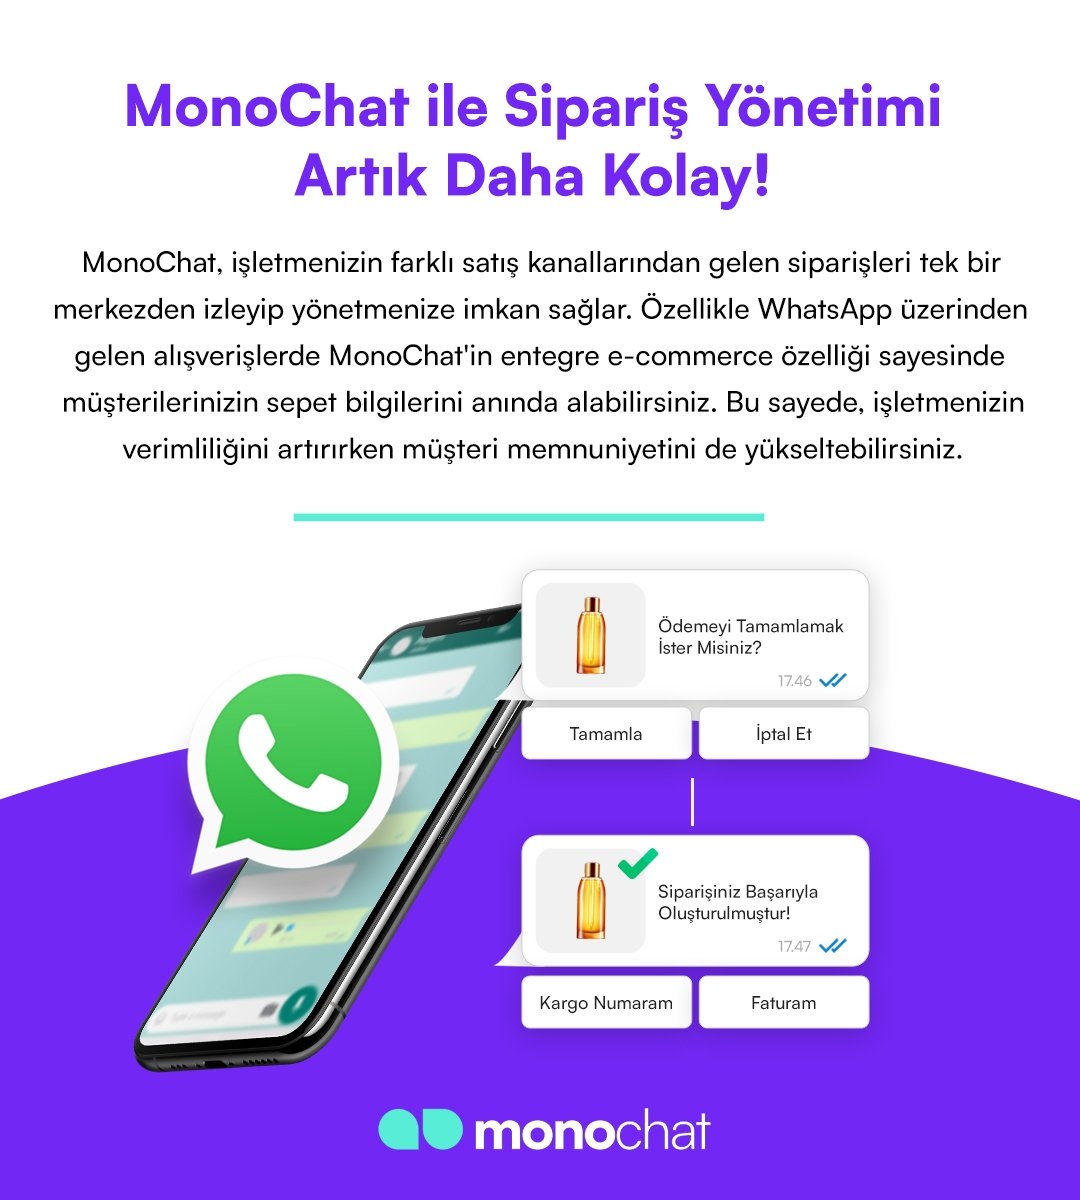 MonoChat ile Sipariş Yönetimi Artık Daha Kolay! 🛒 

#MonoChat #YazılımÇözümleri #İnovasyon #PazarlamaStratejileri